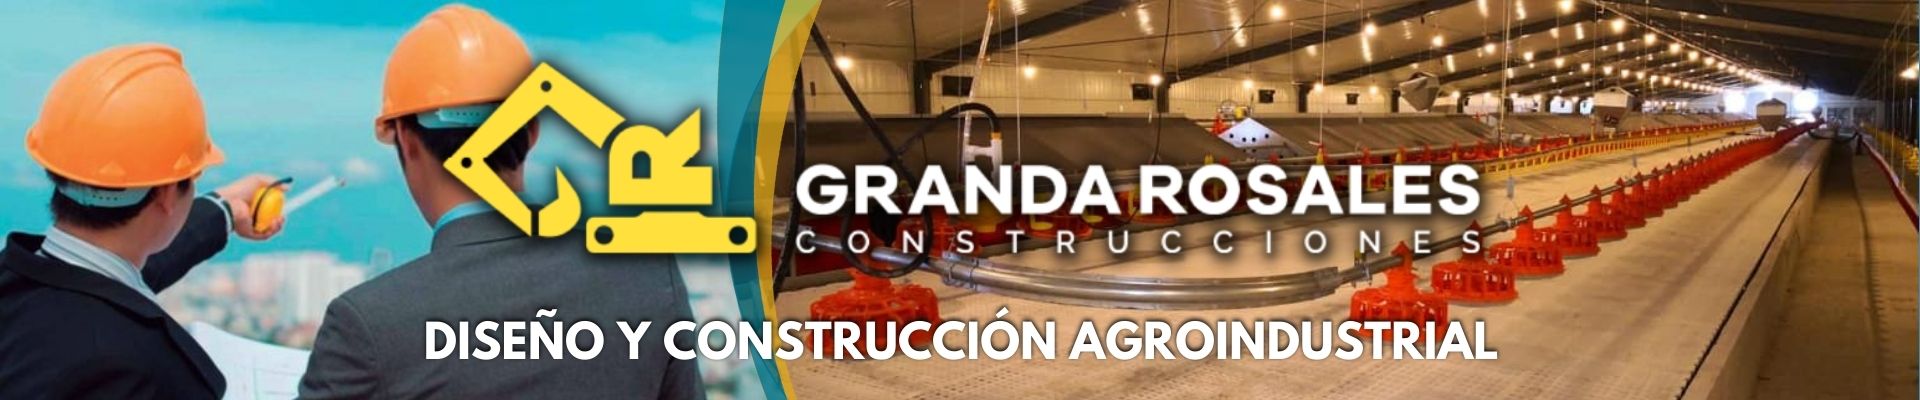 GR-Construcciones-agroshow